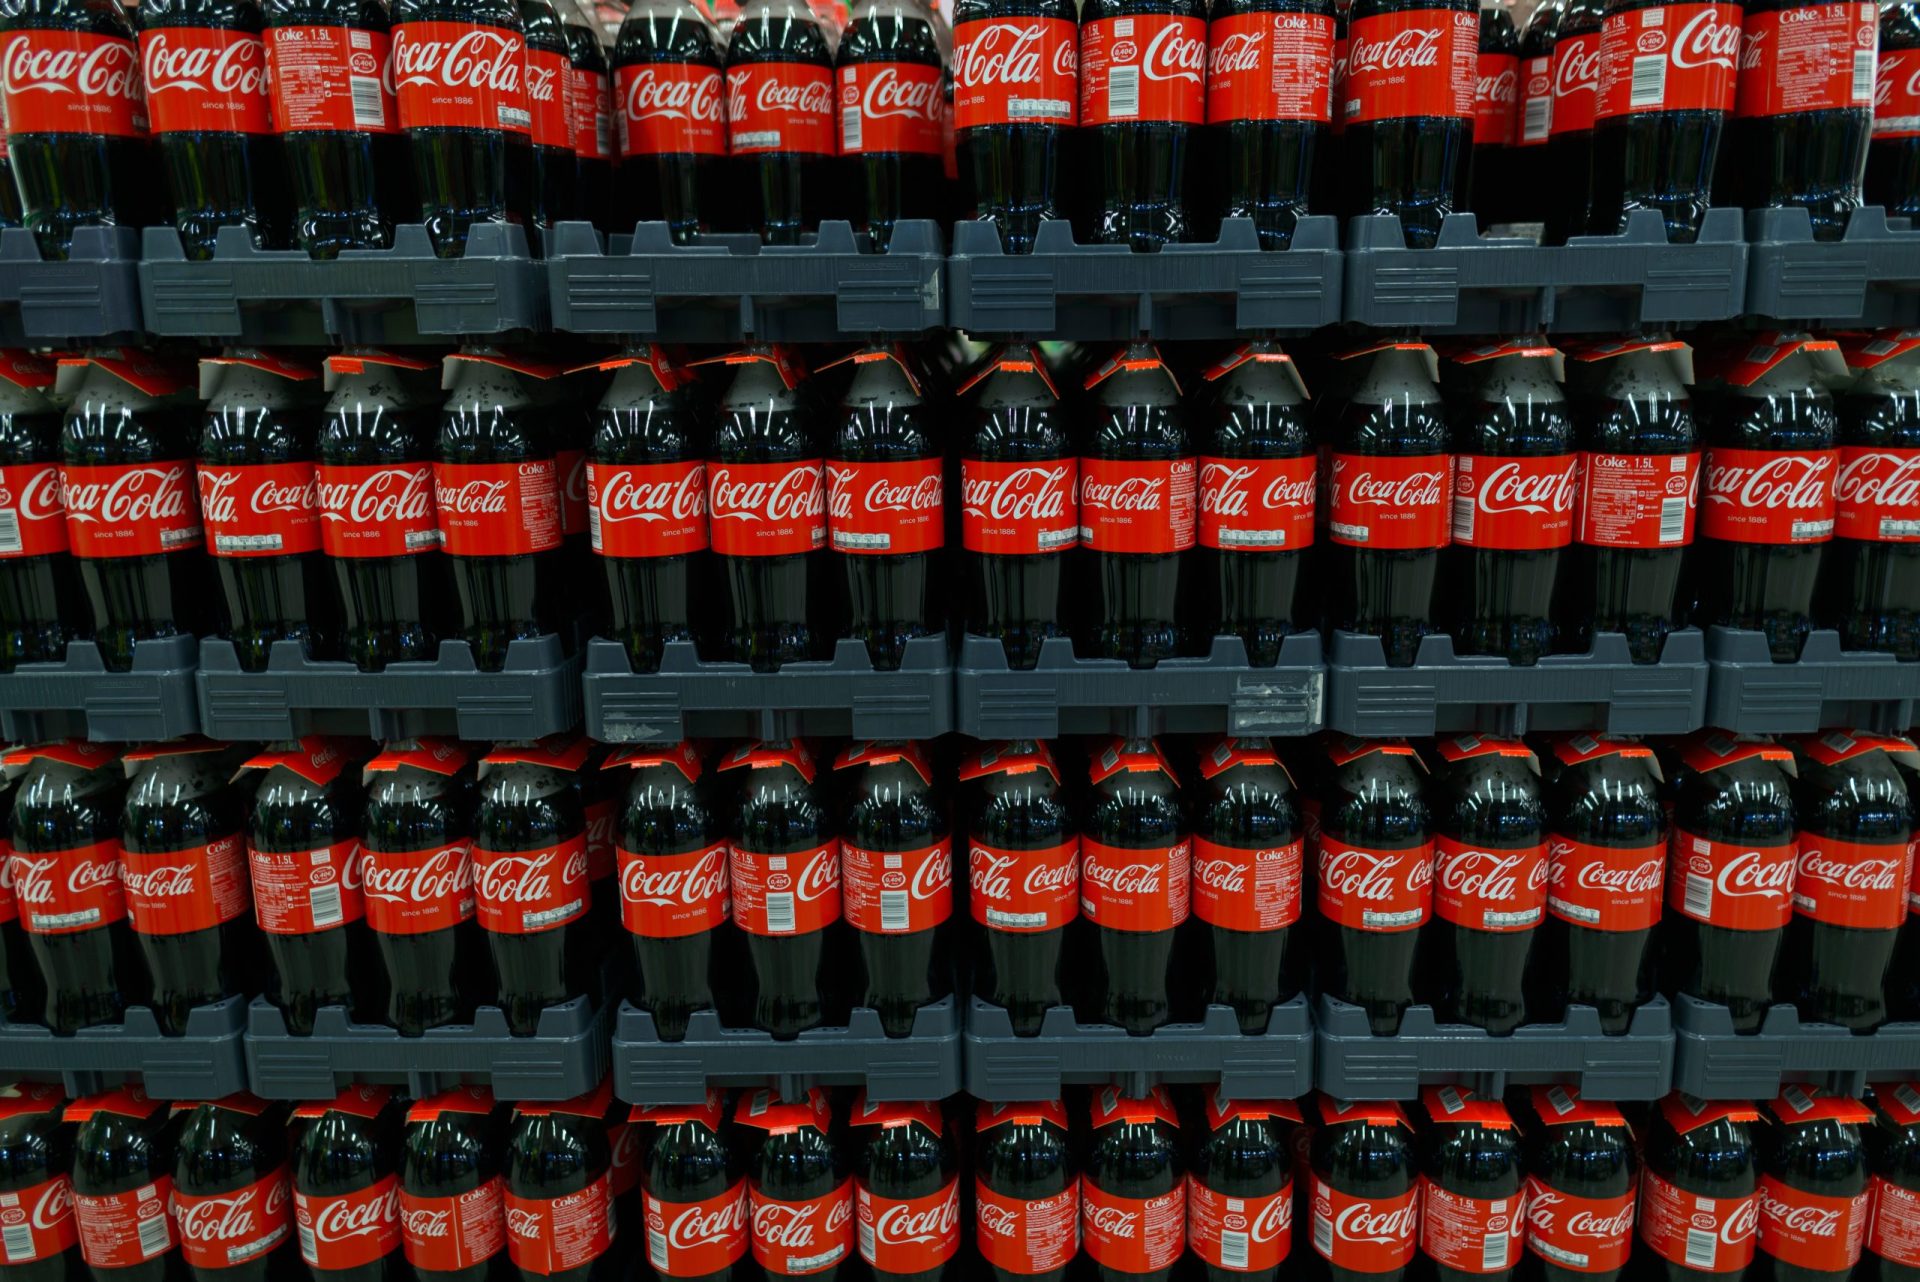 Presidente da Coca-Cola confrontado com a quantidade de açúcar de uma lata [vídeo]